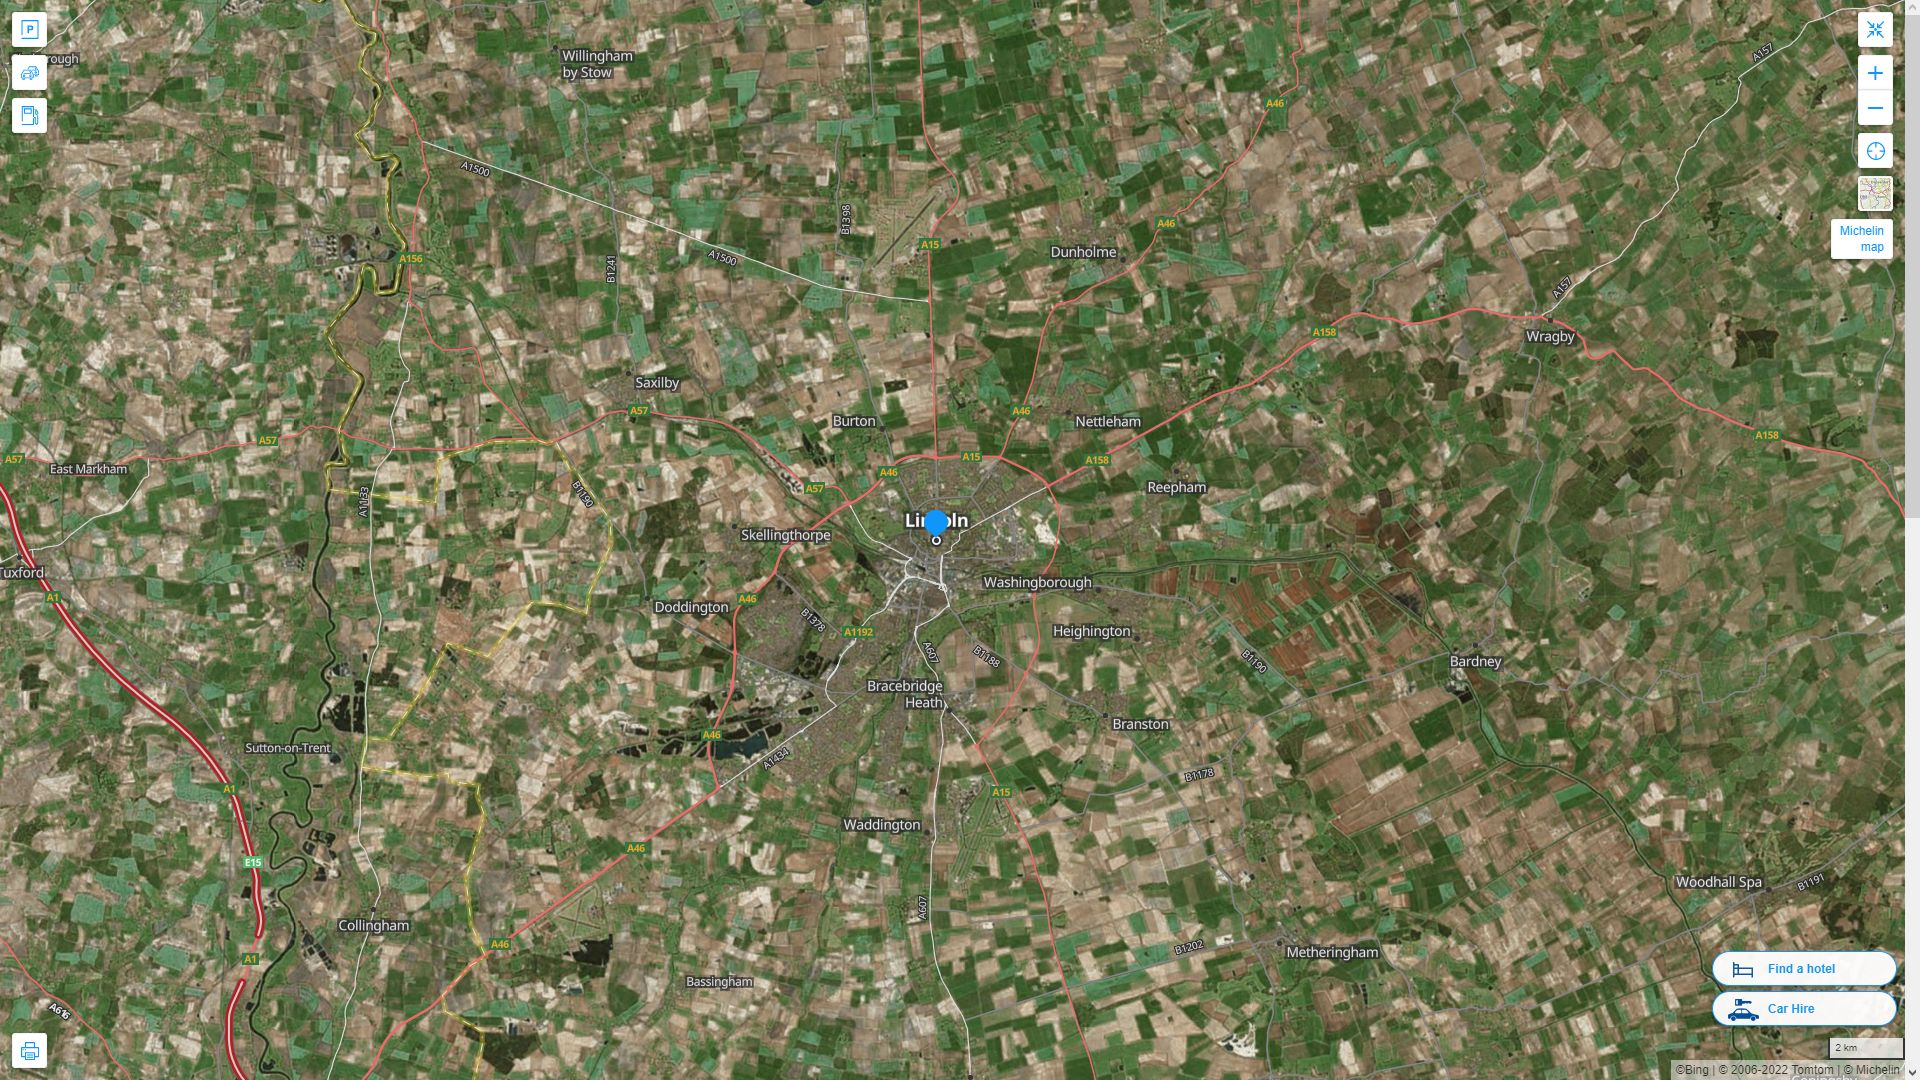 Lincoln Royaume Uni Autoroute et carte routiere avec vue satellite